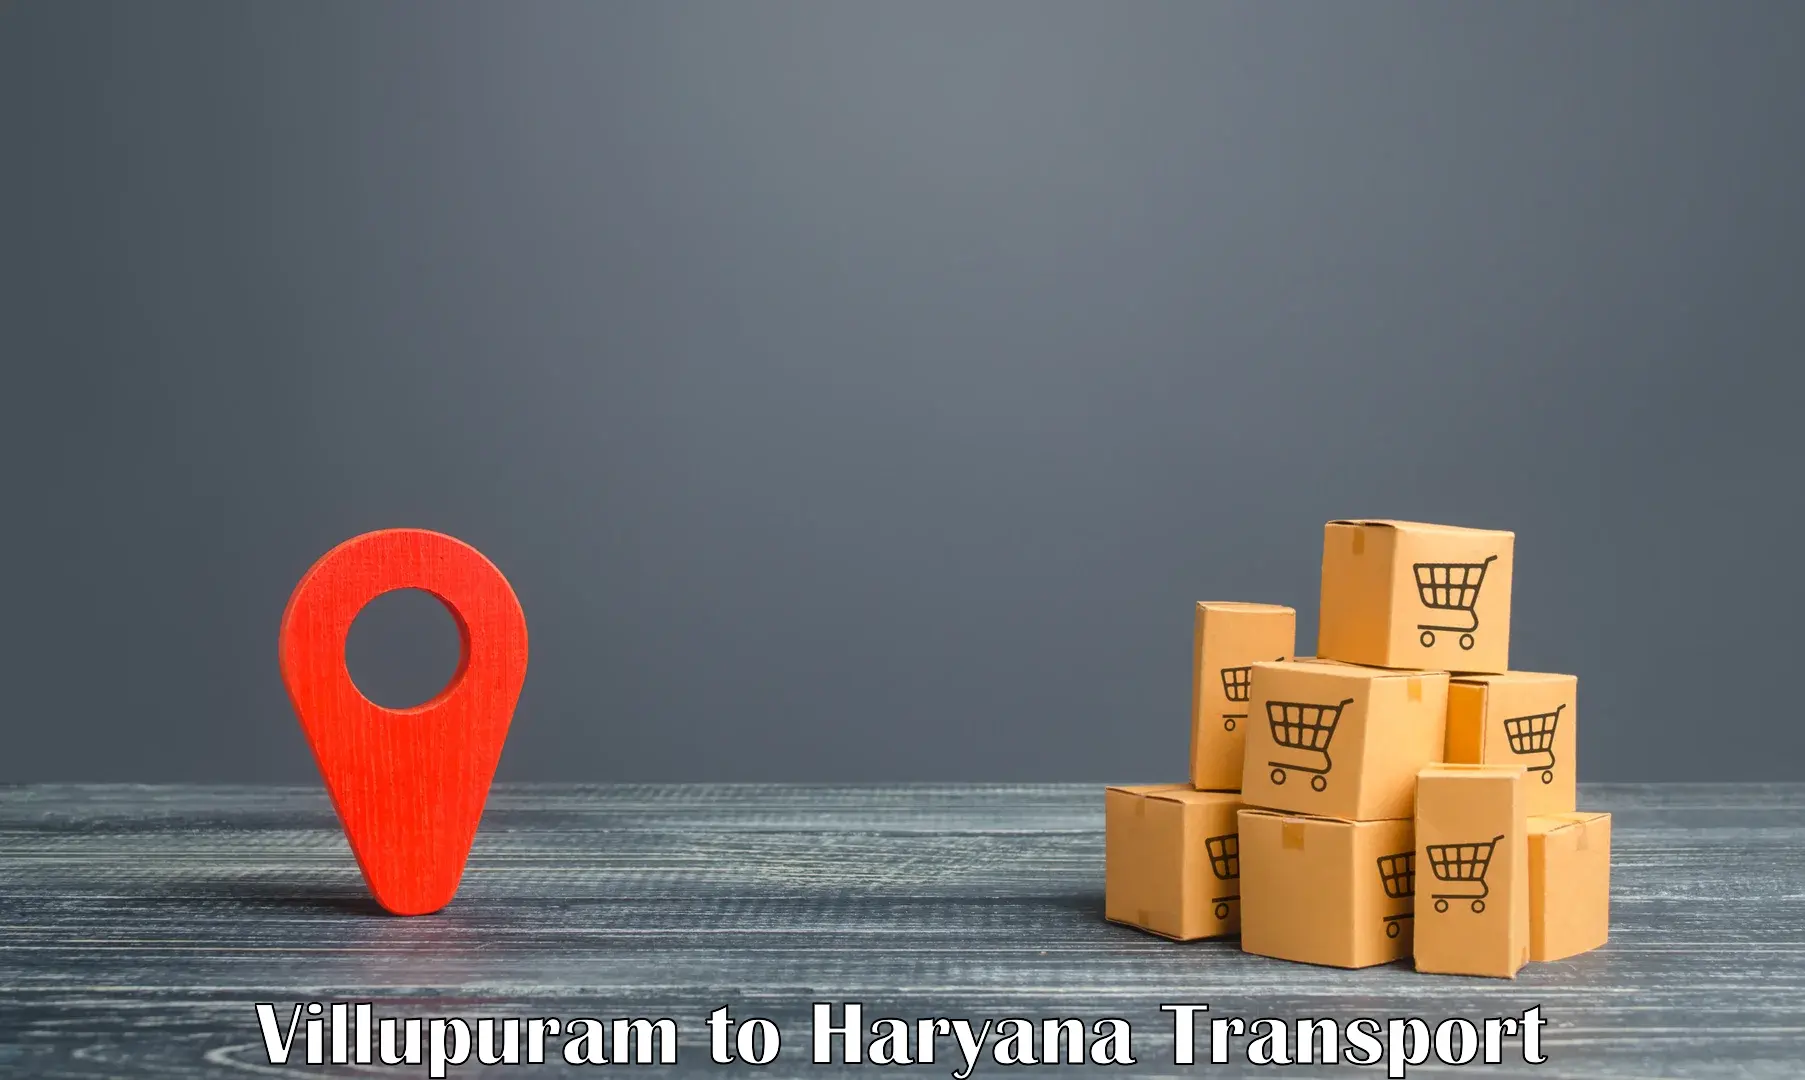 Commercial transport service Villupuram to Hisar